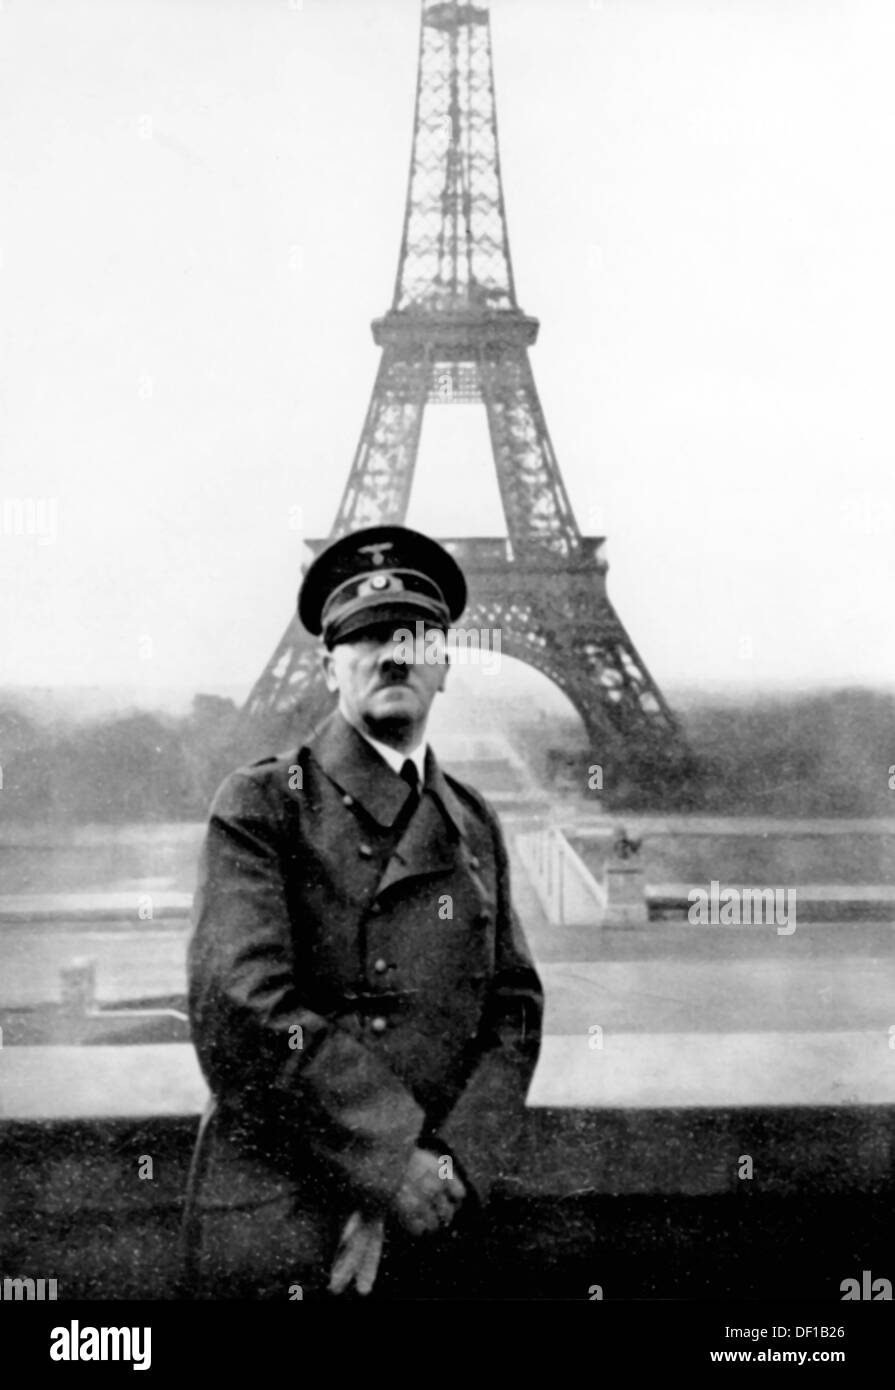 L'image de la propagande nazie! Montre Adolf Hitler devant la Tour Eiffel à Paris, en France, occupée par les troupes allemandes, le 28 juin 1940. Fotoarchiv für Zeitgeschichte Banque D'Images